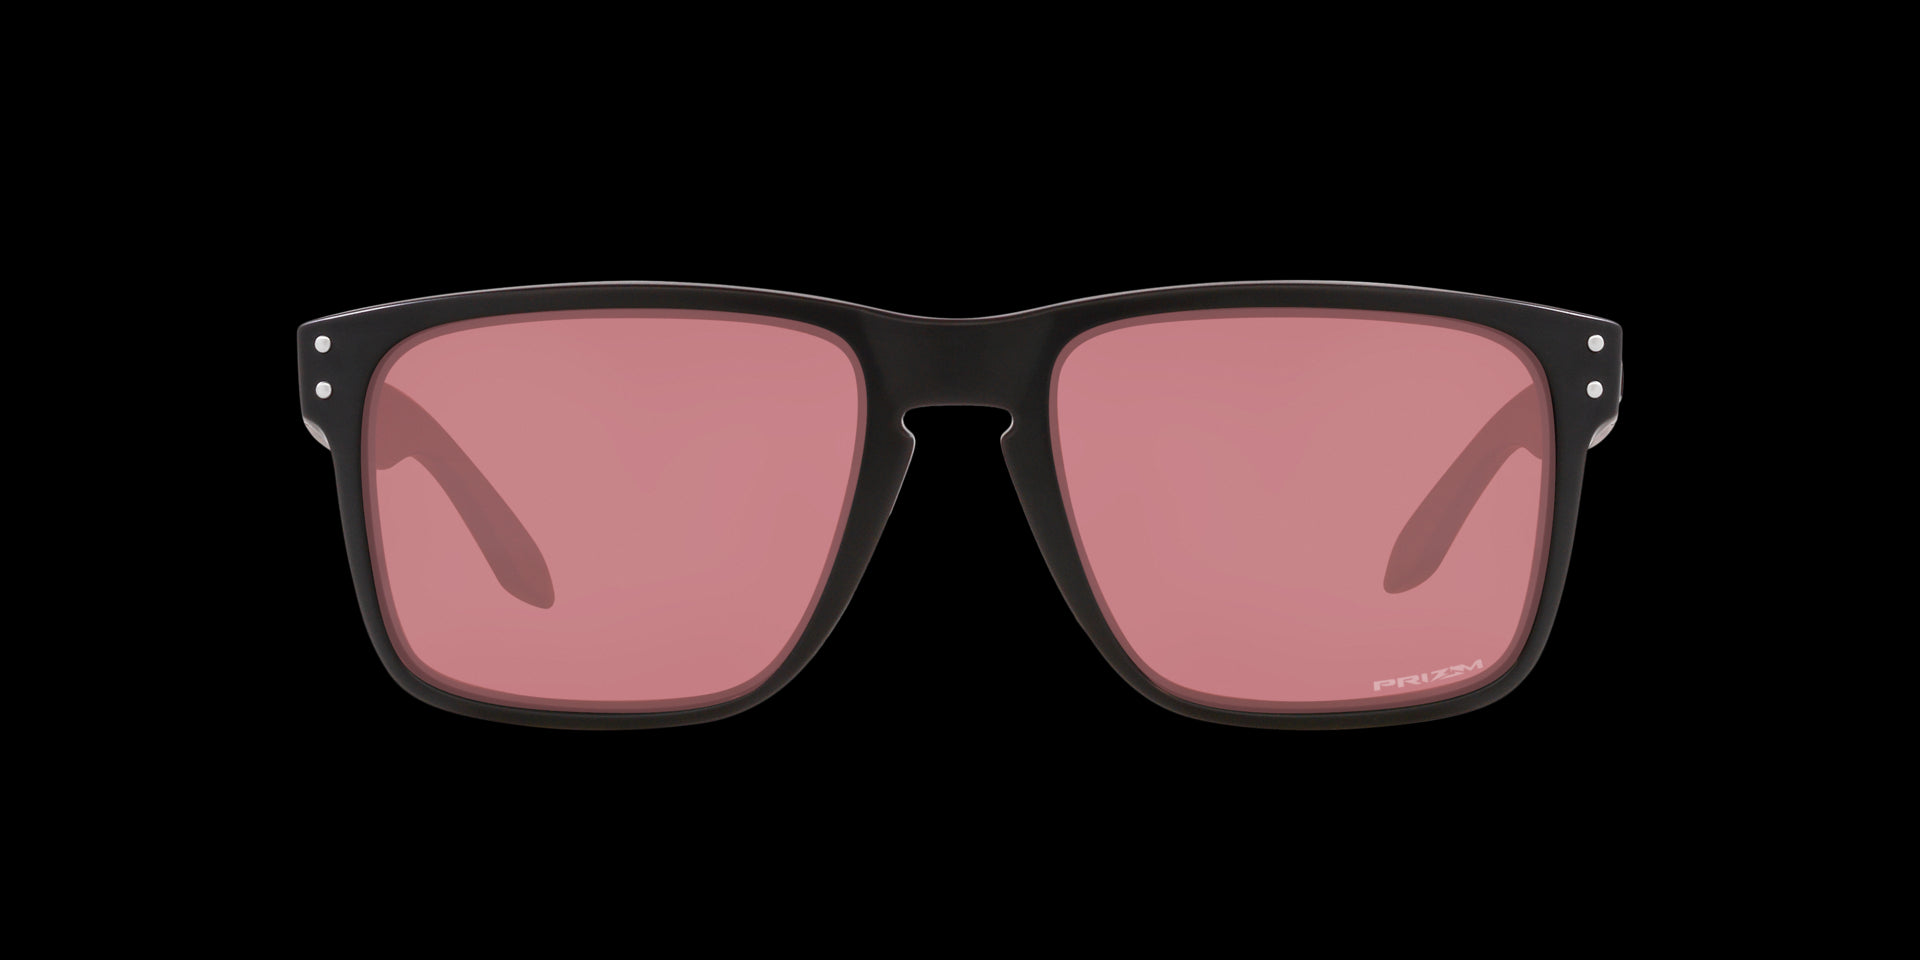 Matte balck/red Holbrook sunglasses